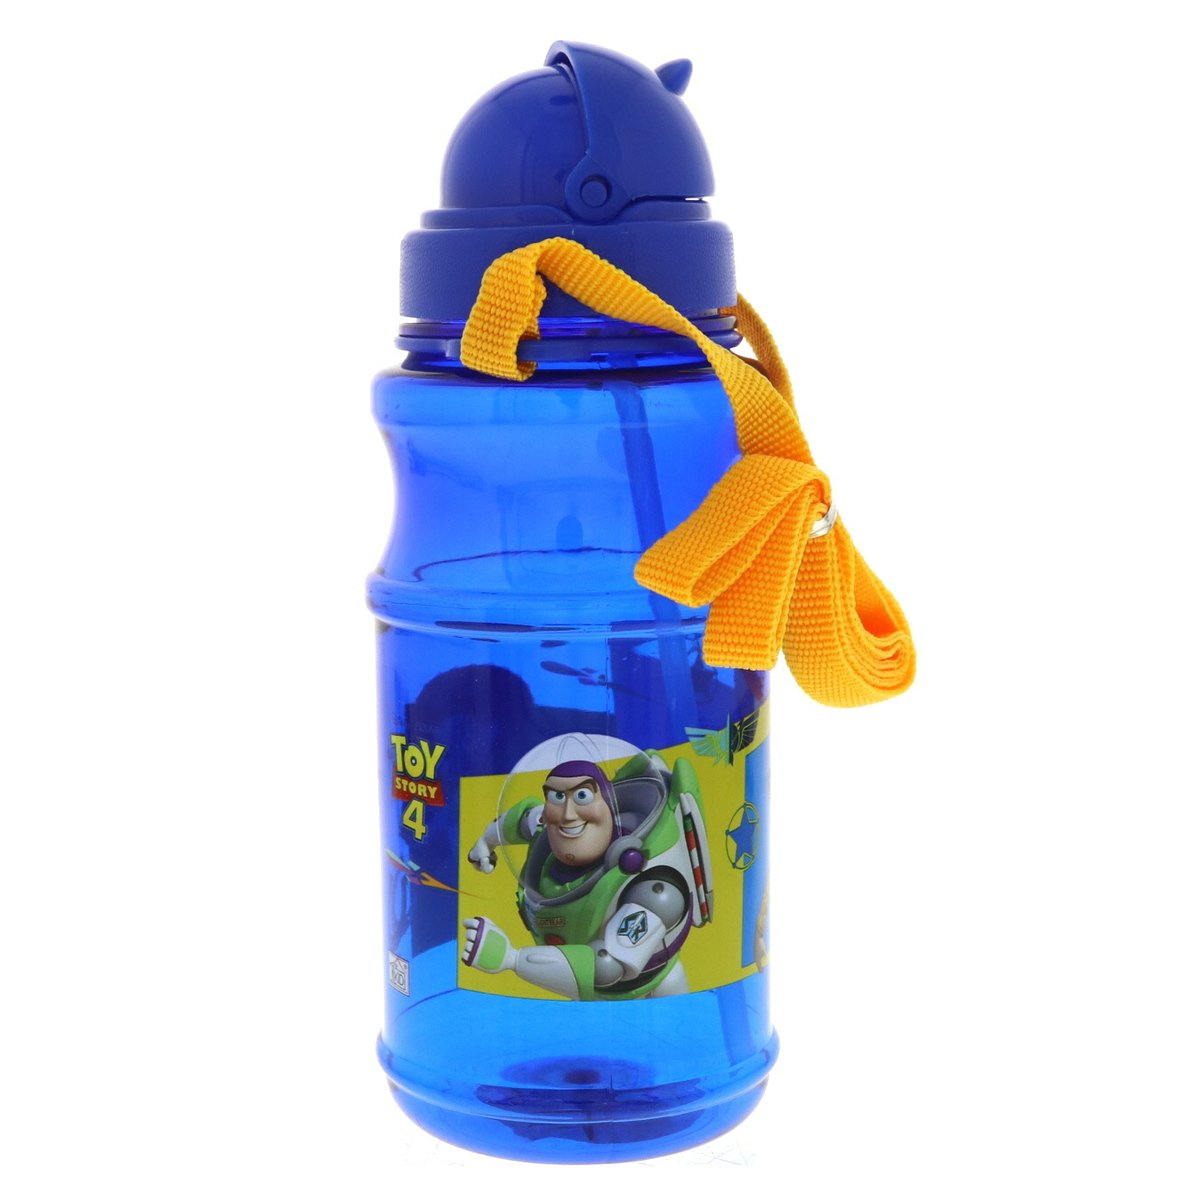 Toy Story Water Bottle Trnsp112-34-0922